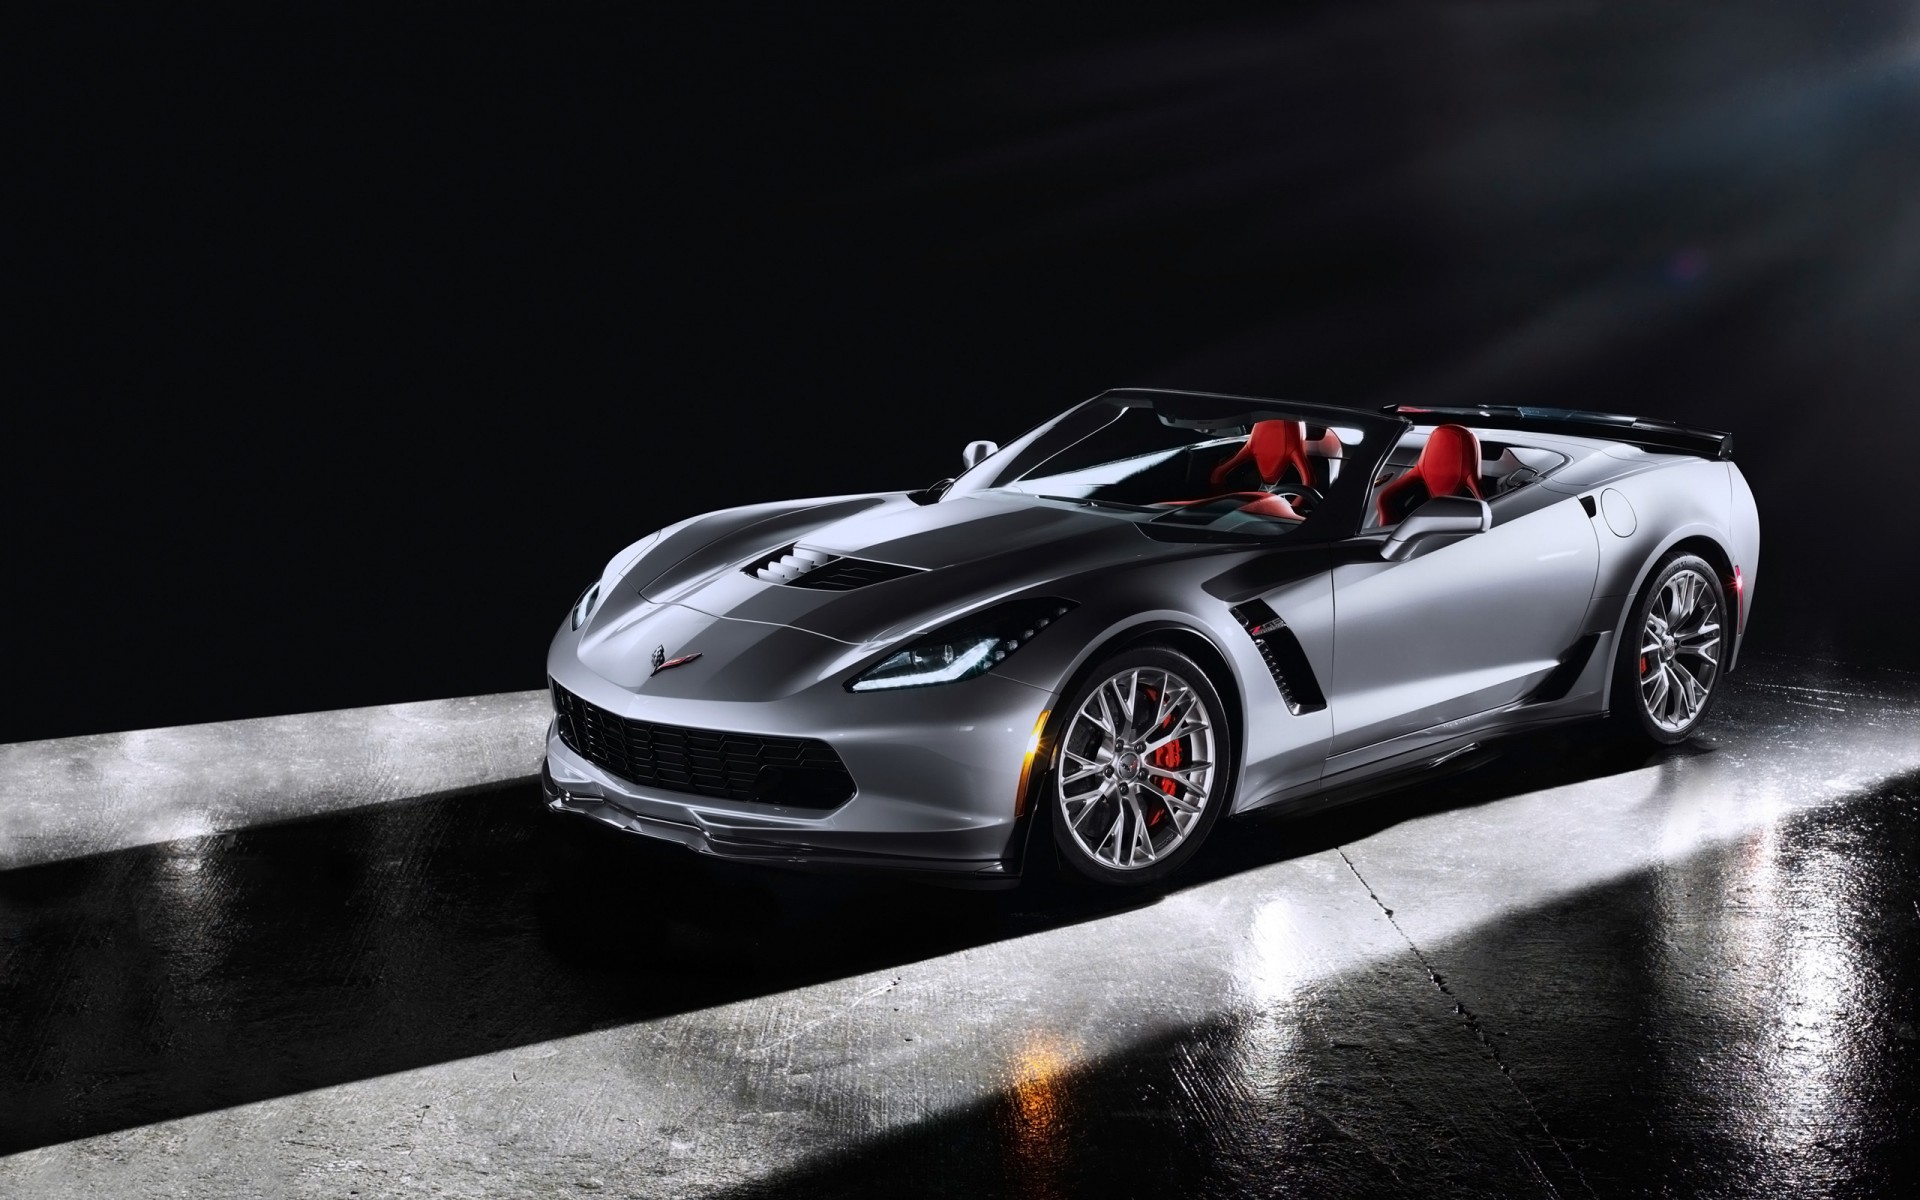 2015 Corvette Wallpapers